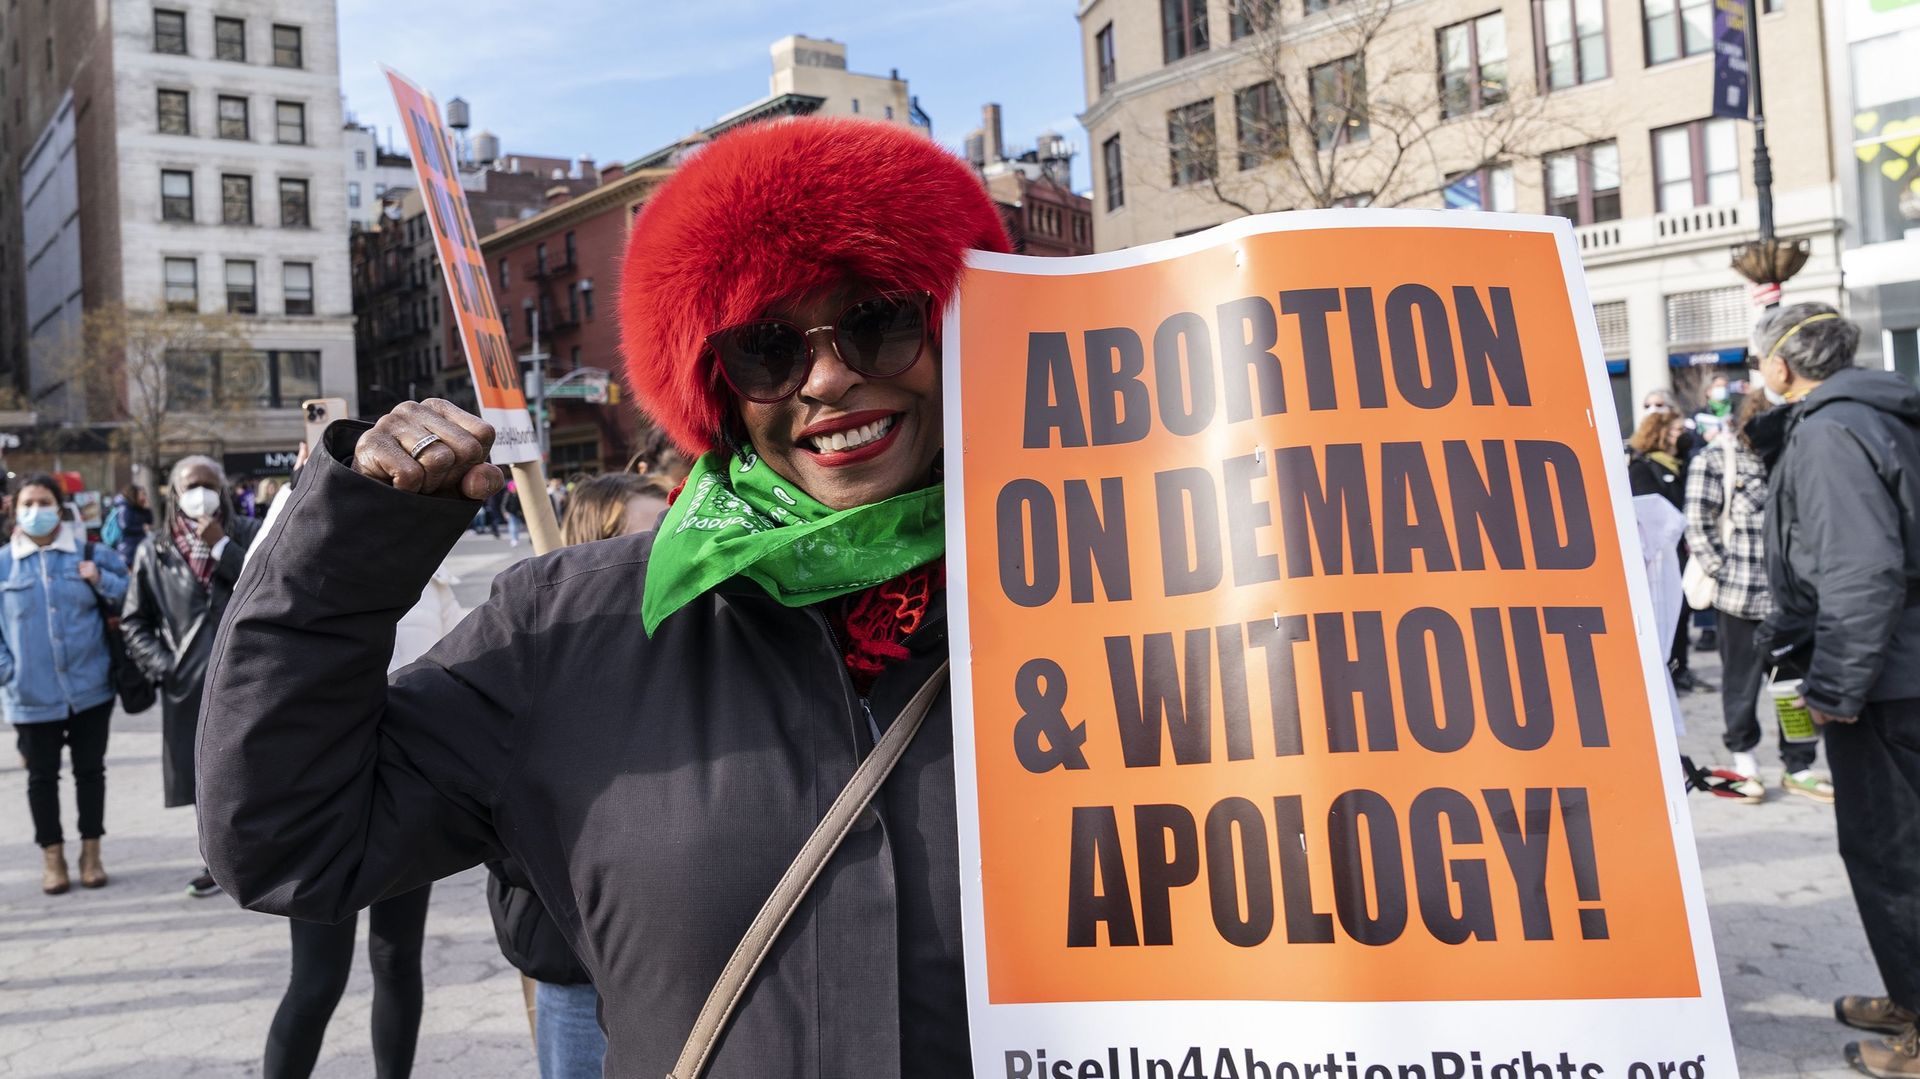 Vague de lois anti-avortement : que se passe-t-il en ce moment aux Etats-Unis ?